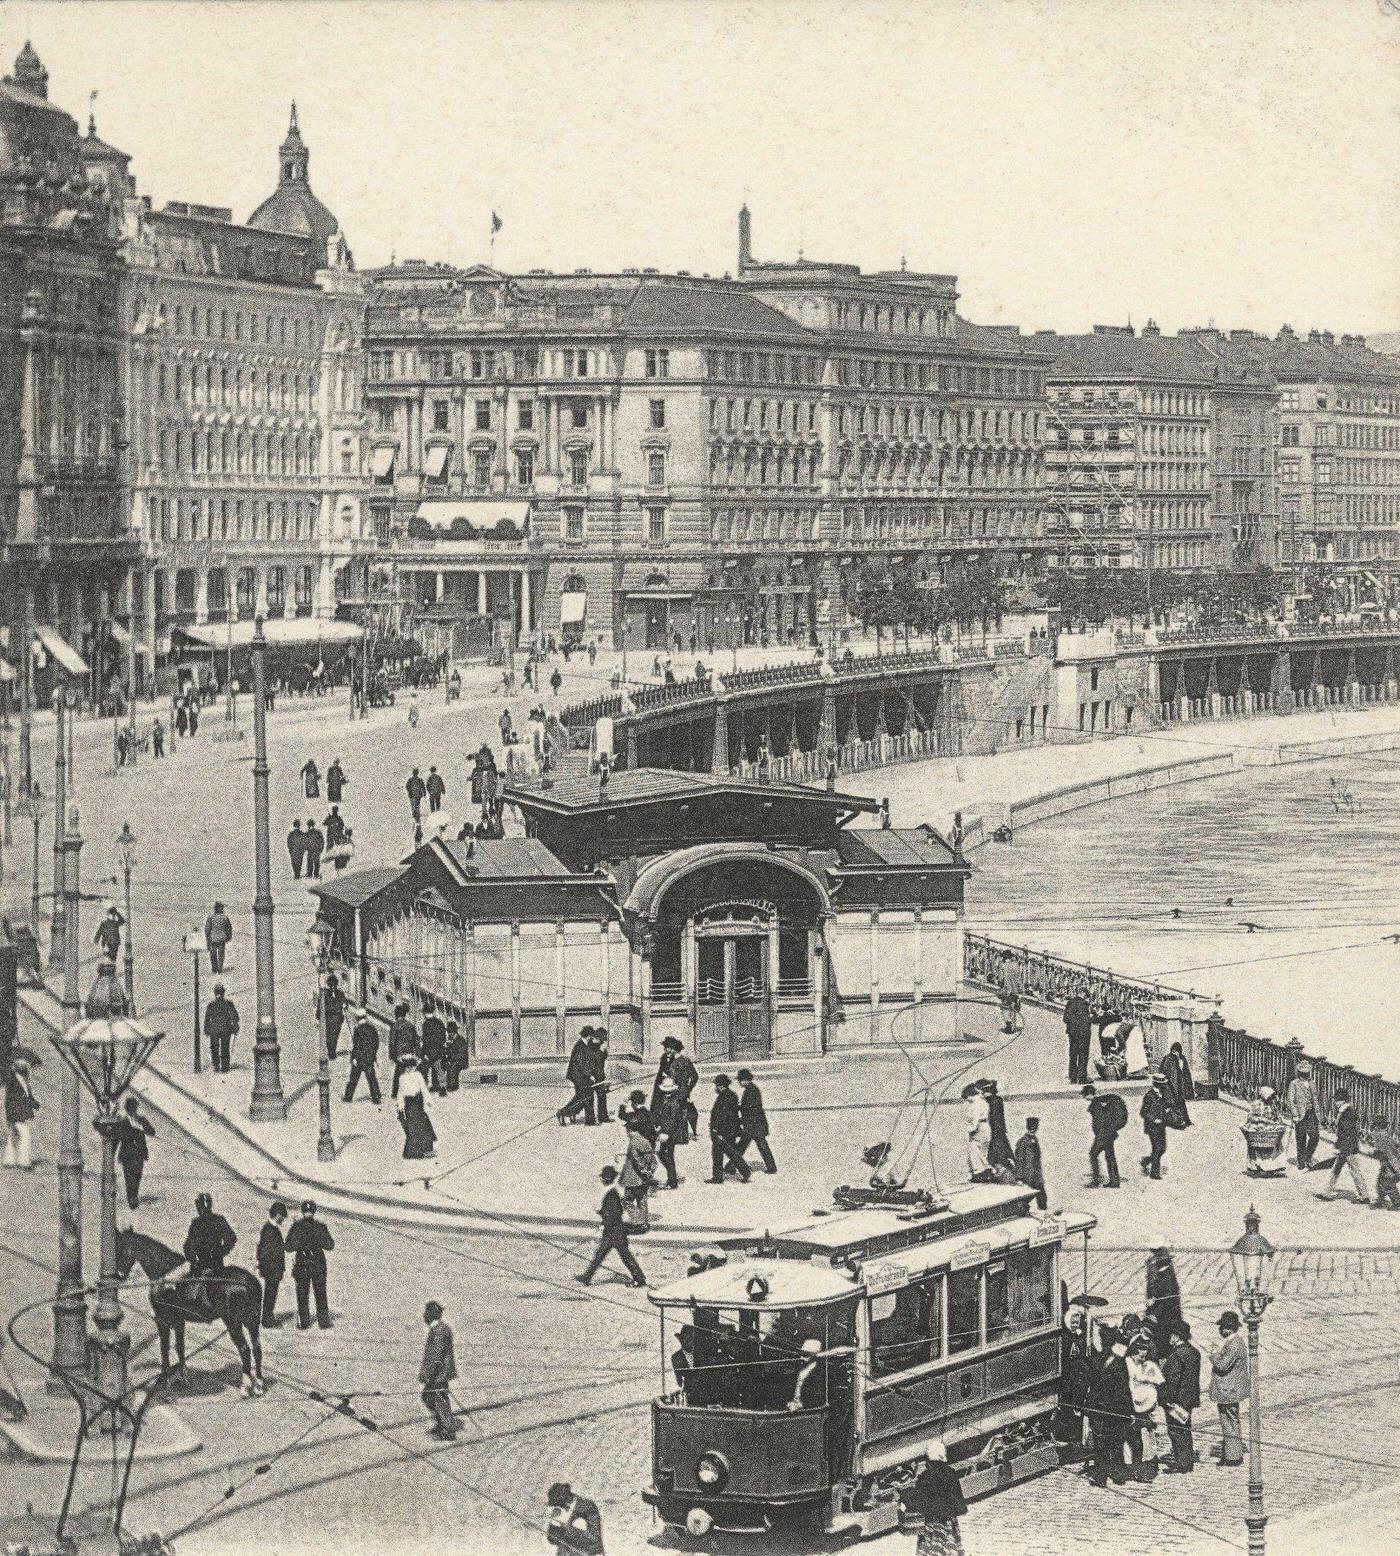 Danube canal in Vienna, Austria, Around 1900